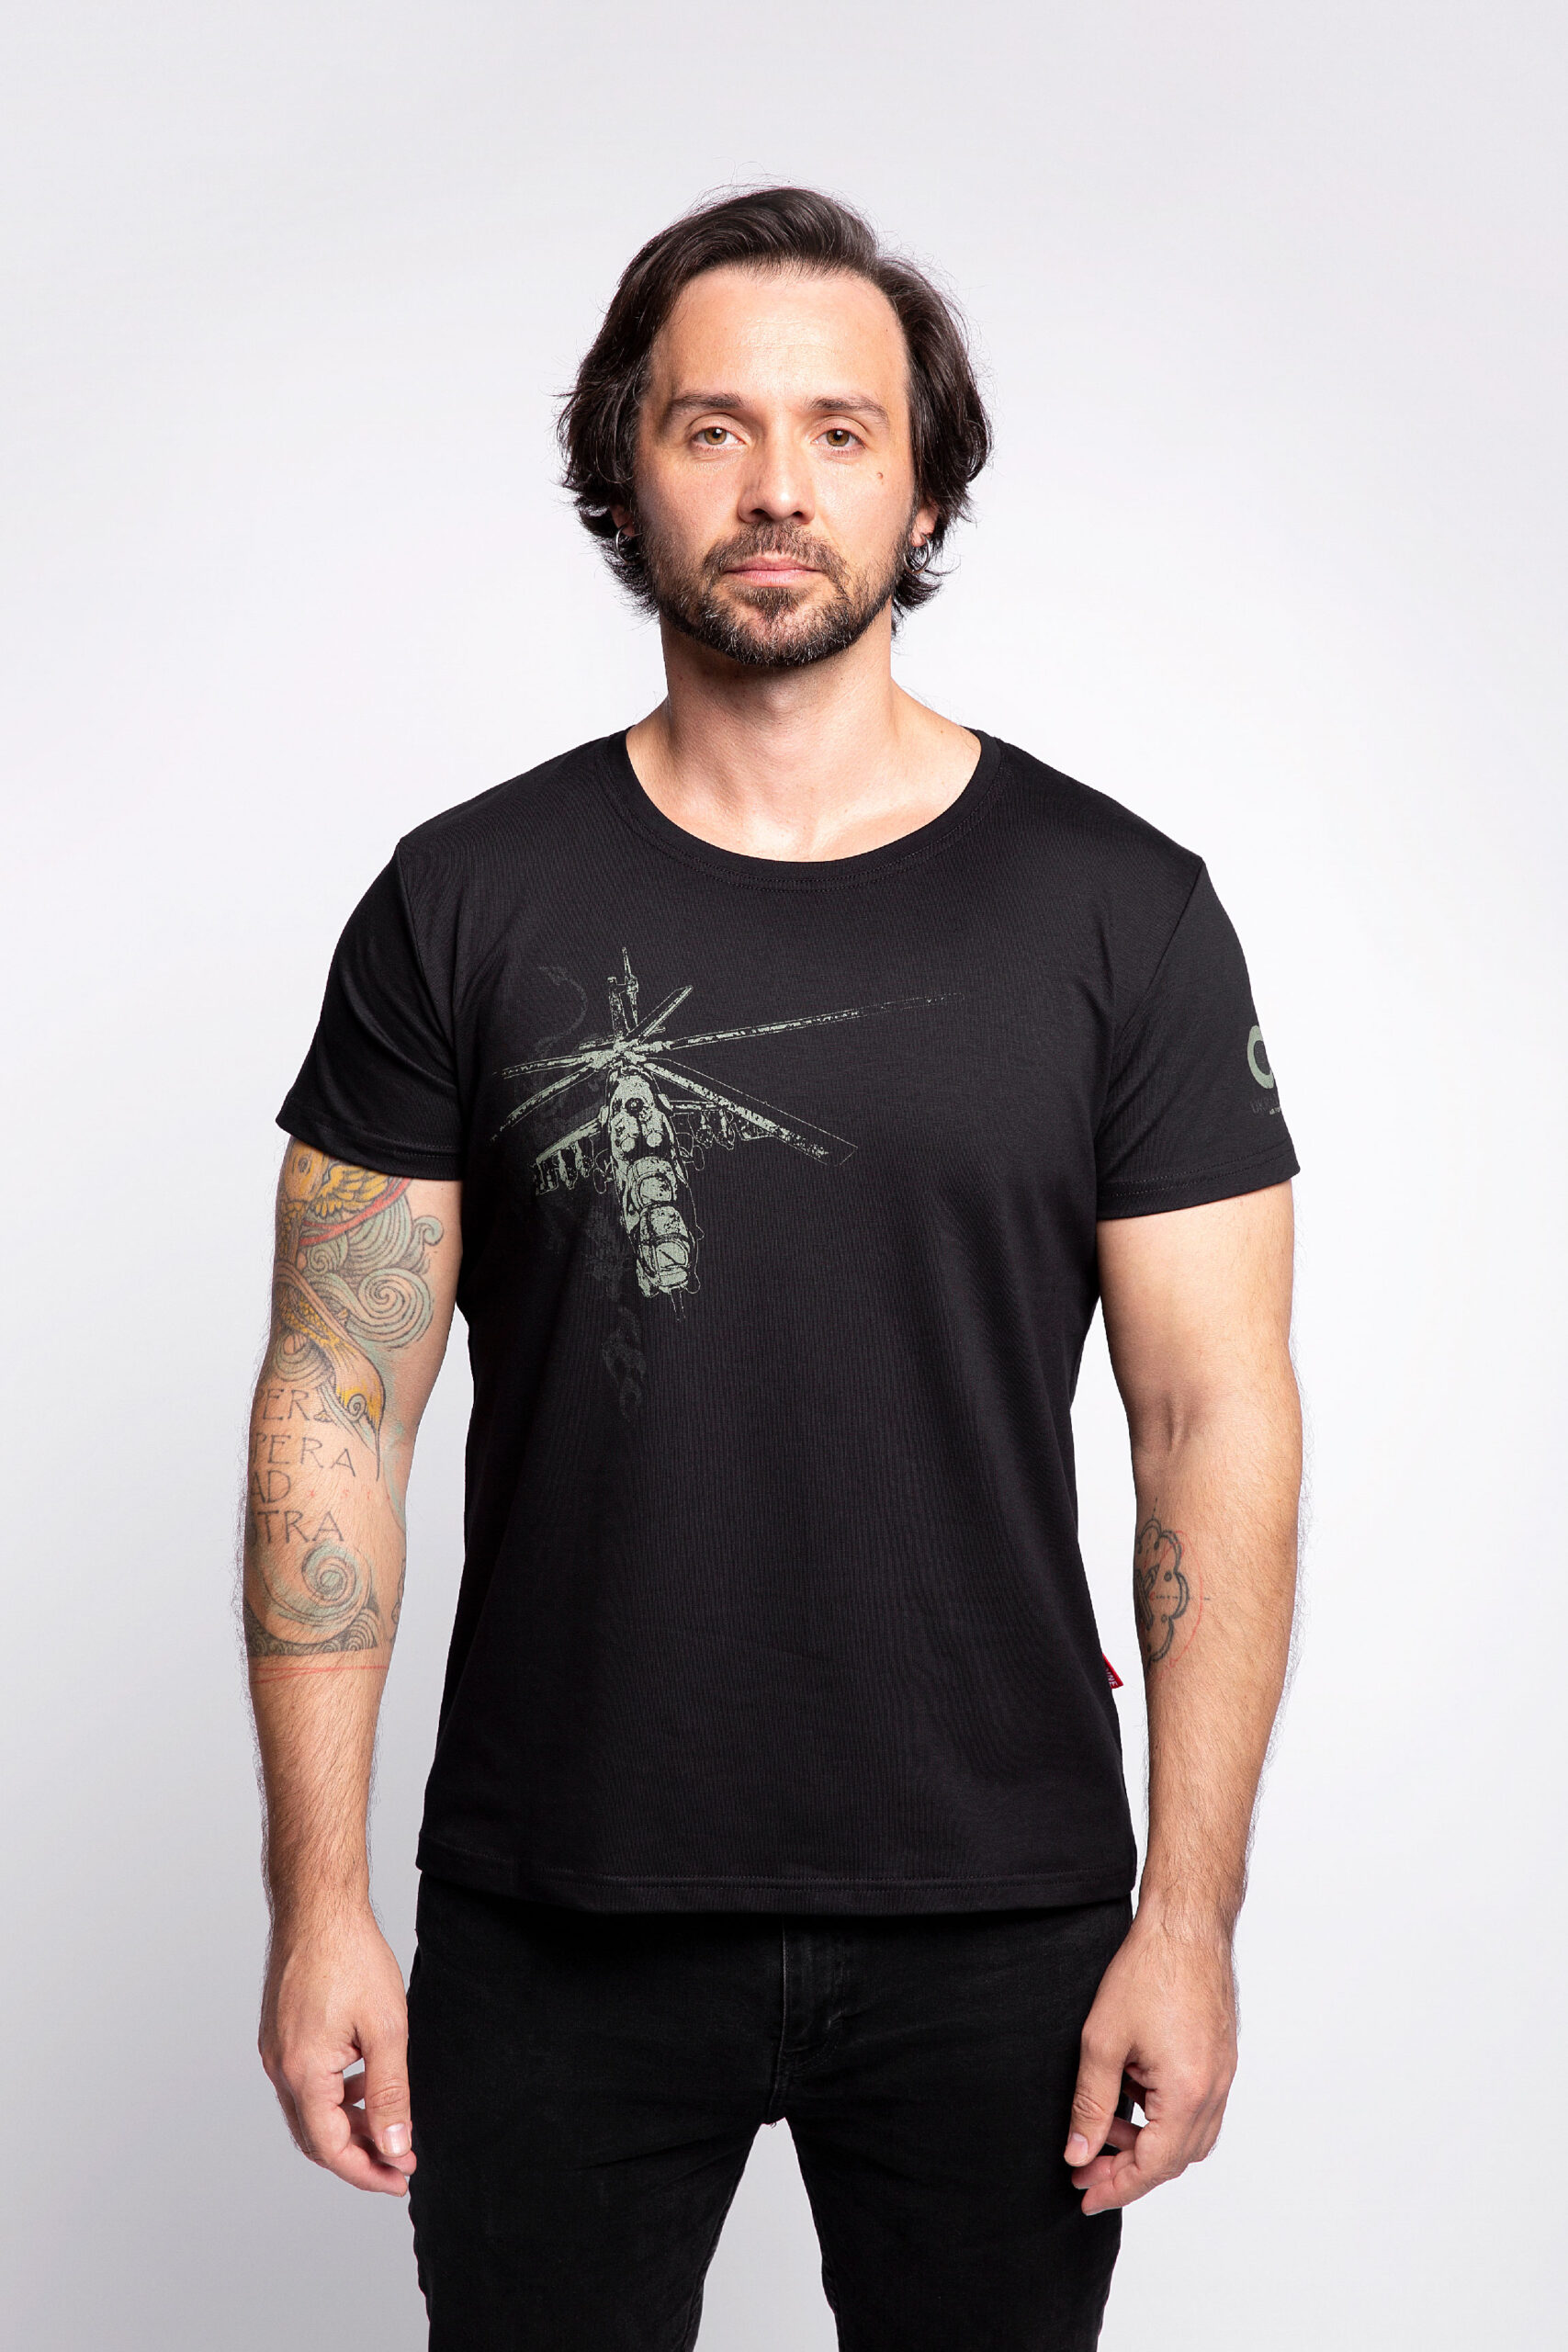 Men's T-Shirt Fire Of Fiery 3.0. Color black. Unisex T-shirt (men’s sizes).